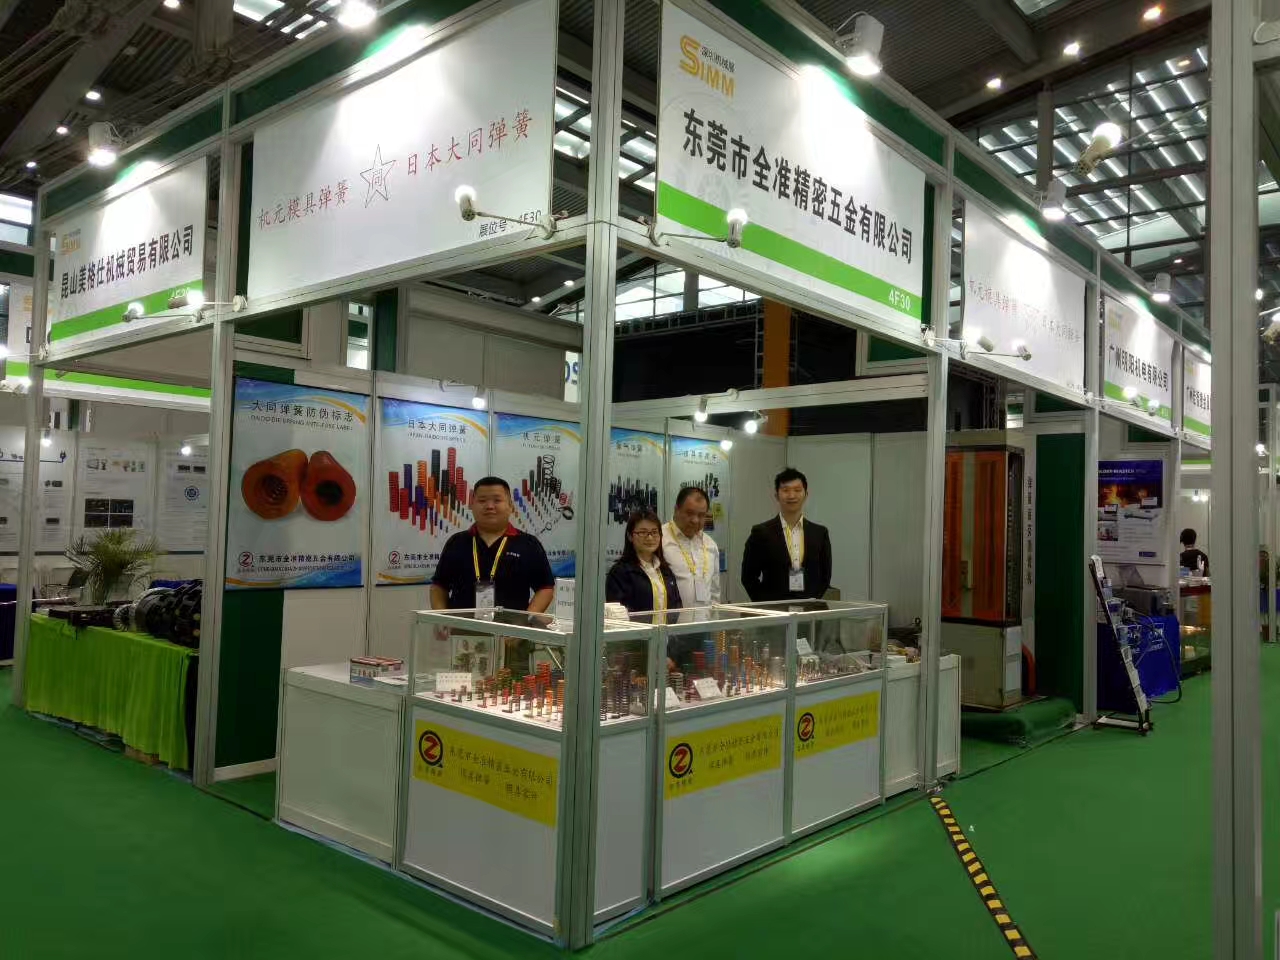 Shenzhen Exhibition in March 2017